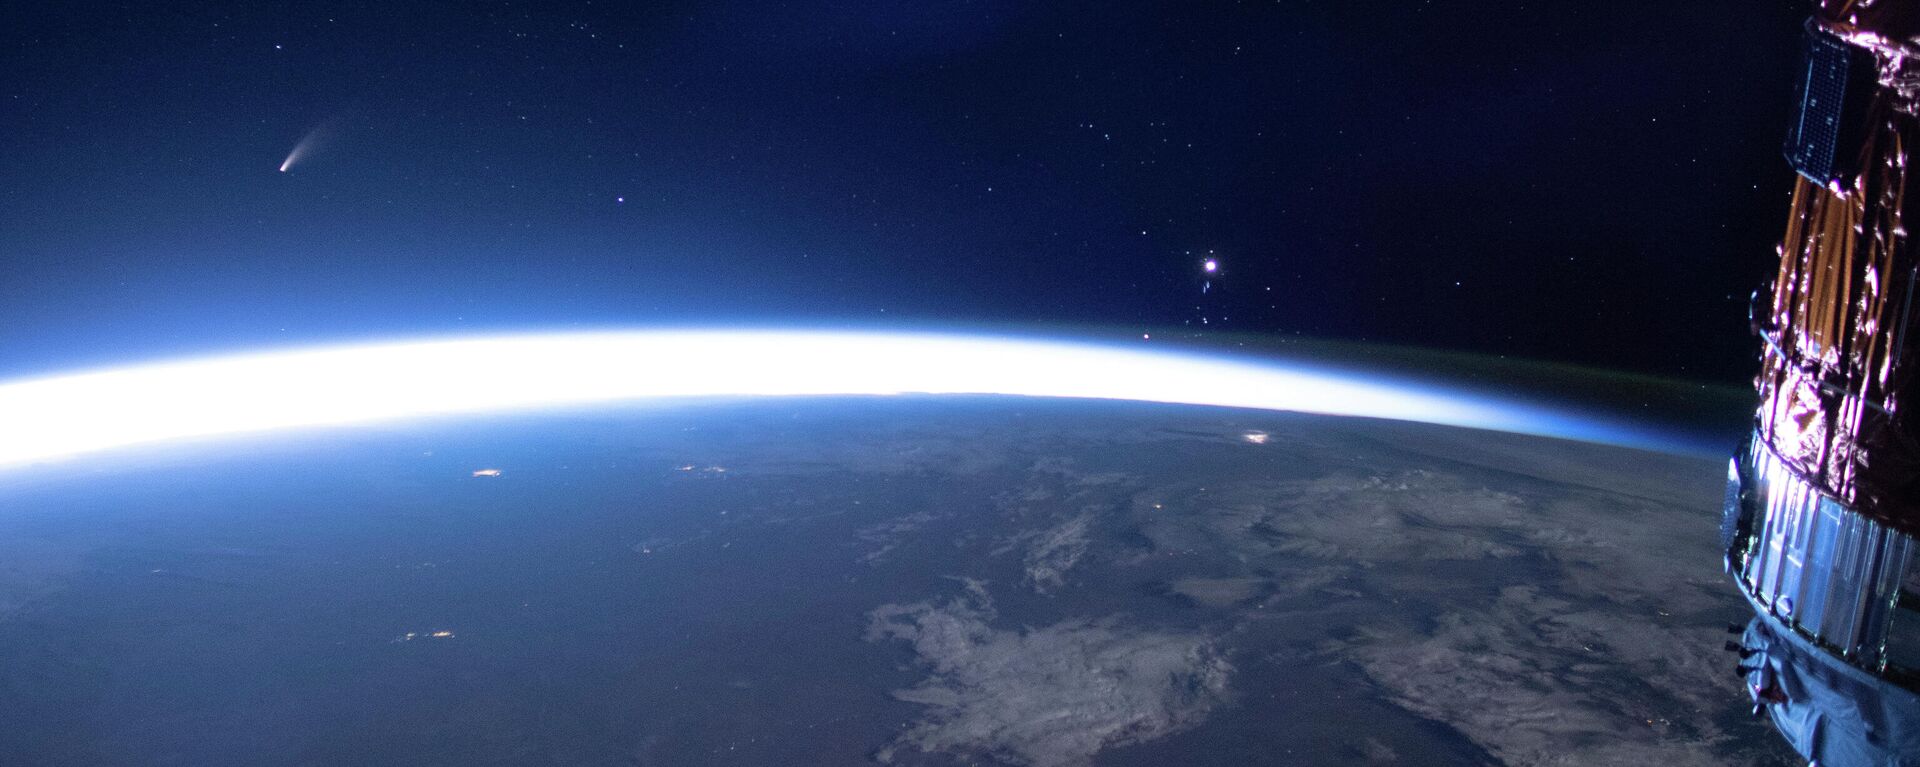 Комета Neowise (слева) видна на восточном горизонте над Землей на изображении, полученном с Международной космической станции, 5 июля 2020 года - Sputnik Азербайджан, 1920, 17.11.2023